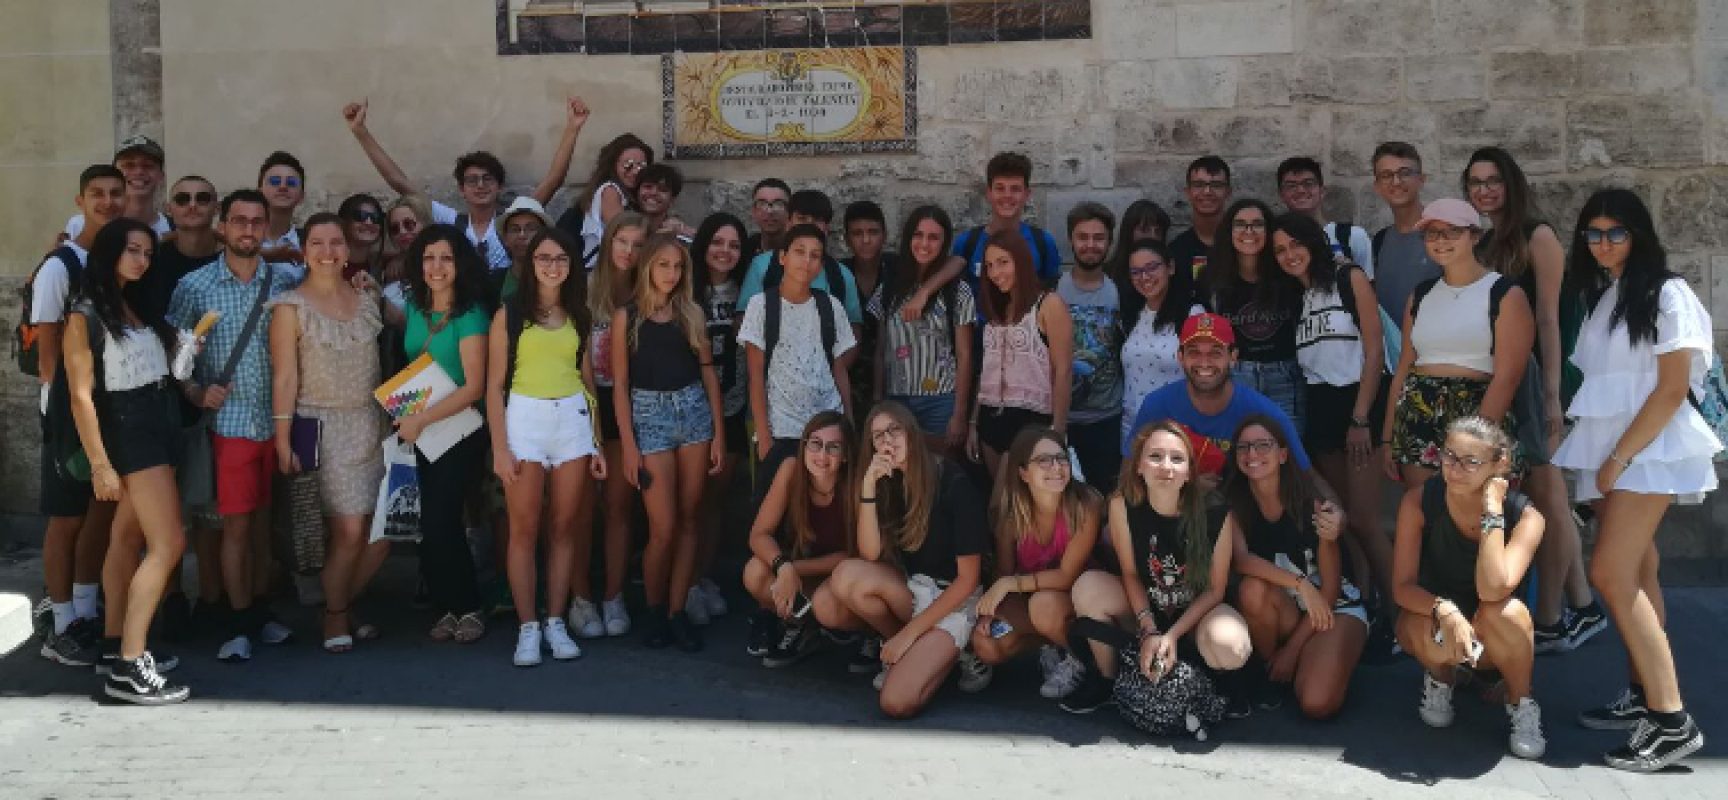 Apprendimento lingue straniere e confronto tra culture, alunni del “Dell’Olio” a Valencia